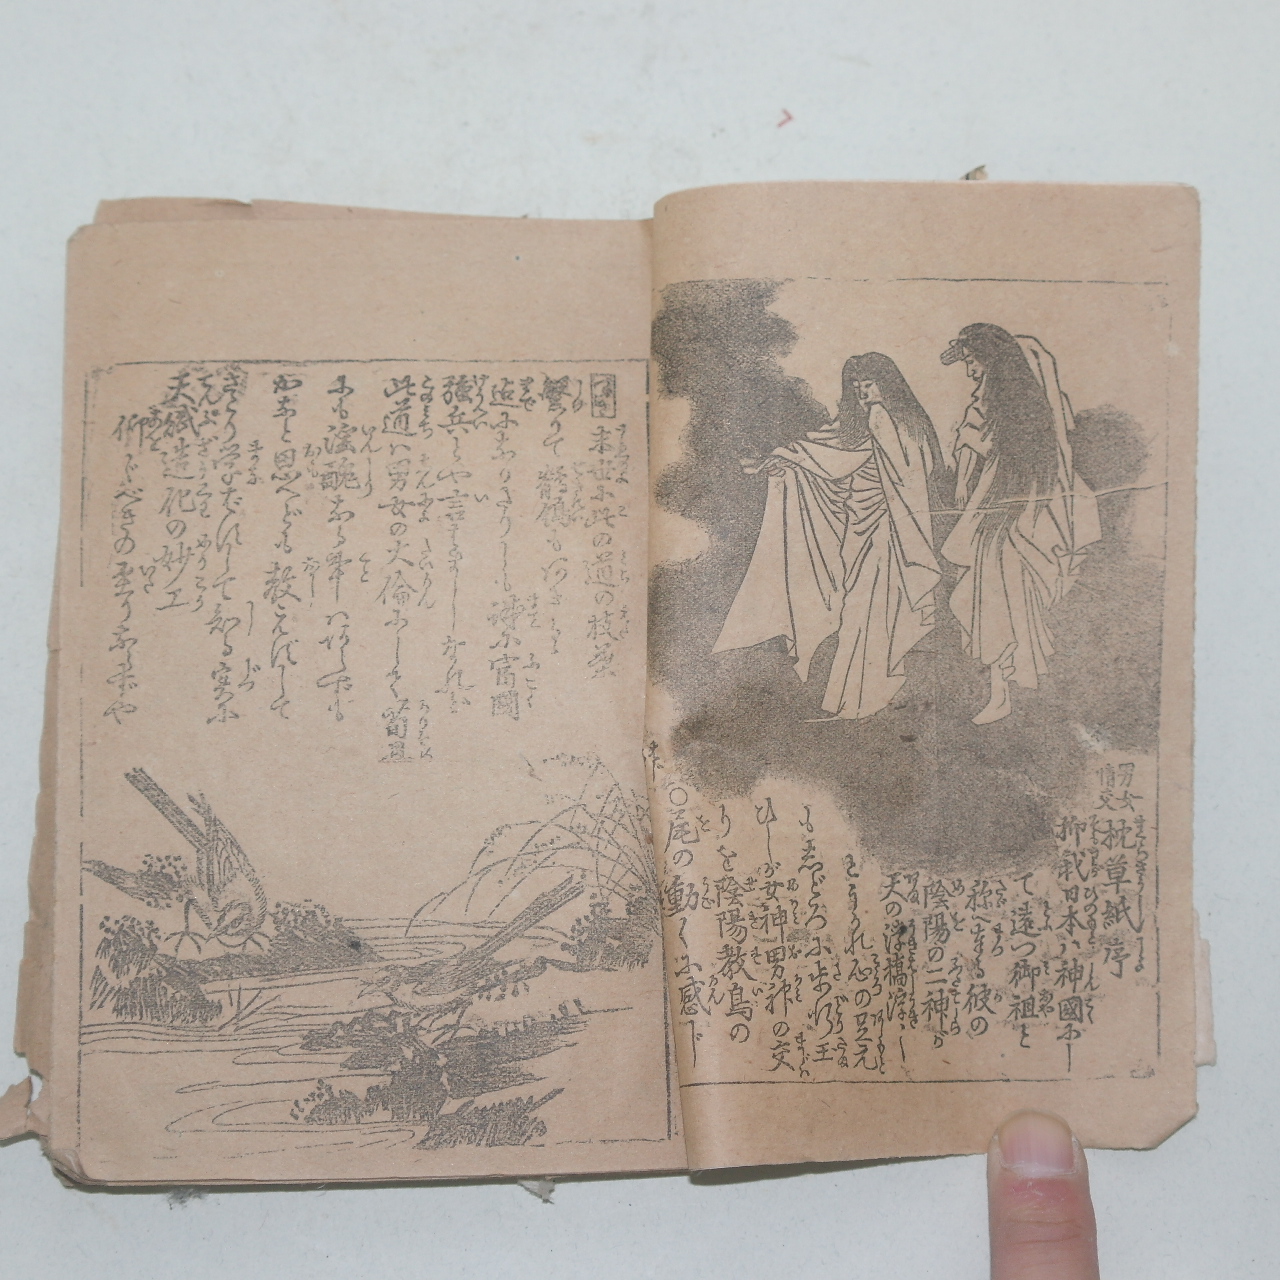 1894년(명치27년) 남여정교(男女情交) 침초지(沈草紙)